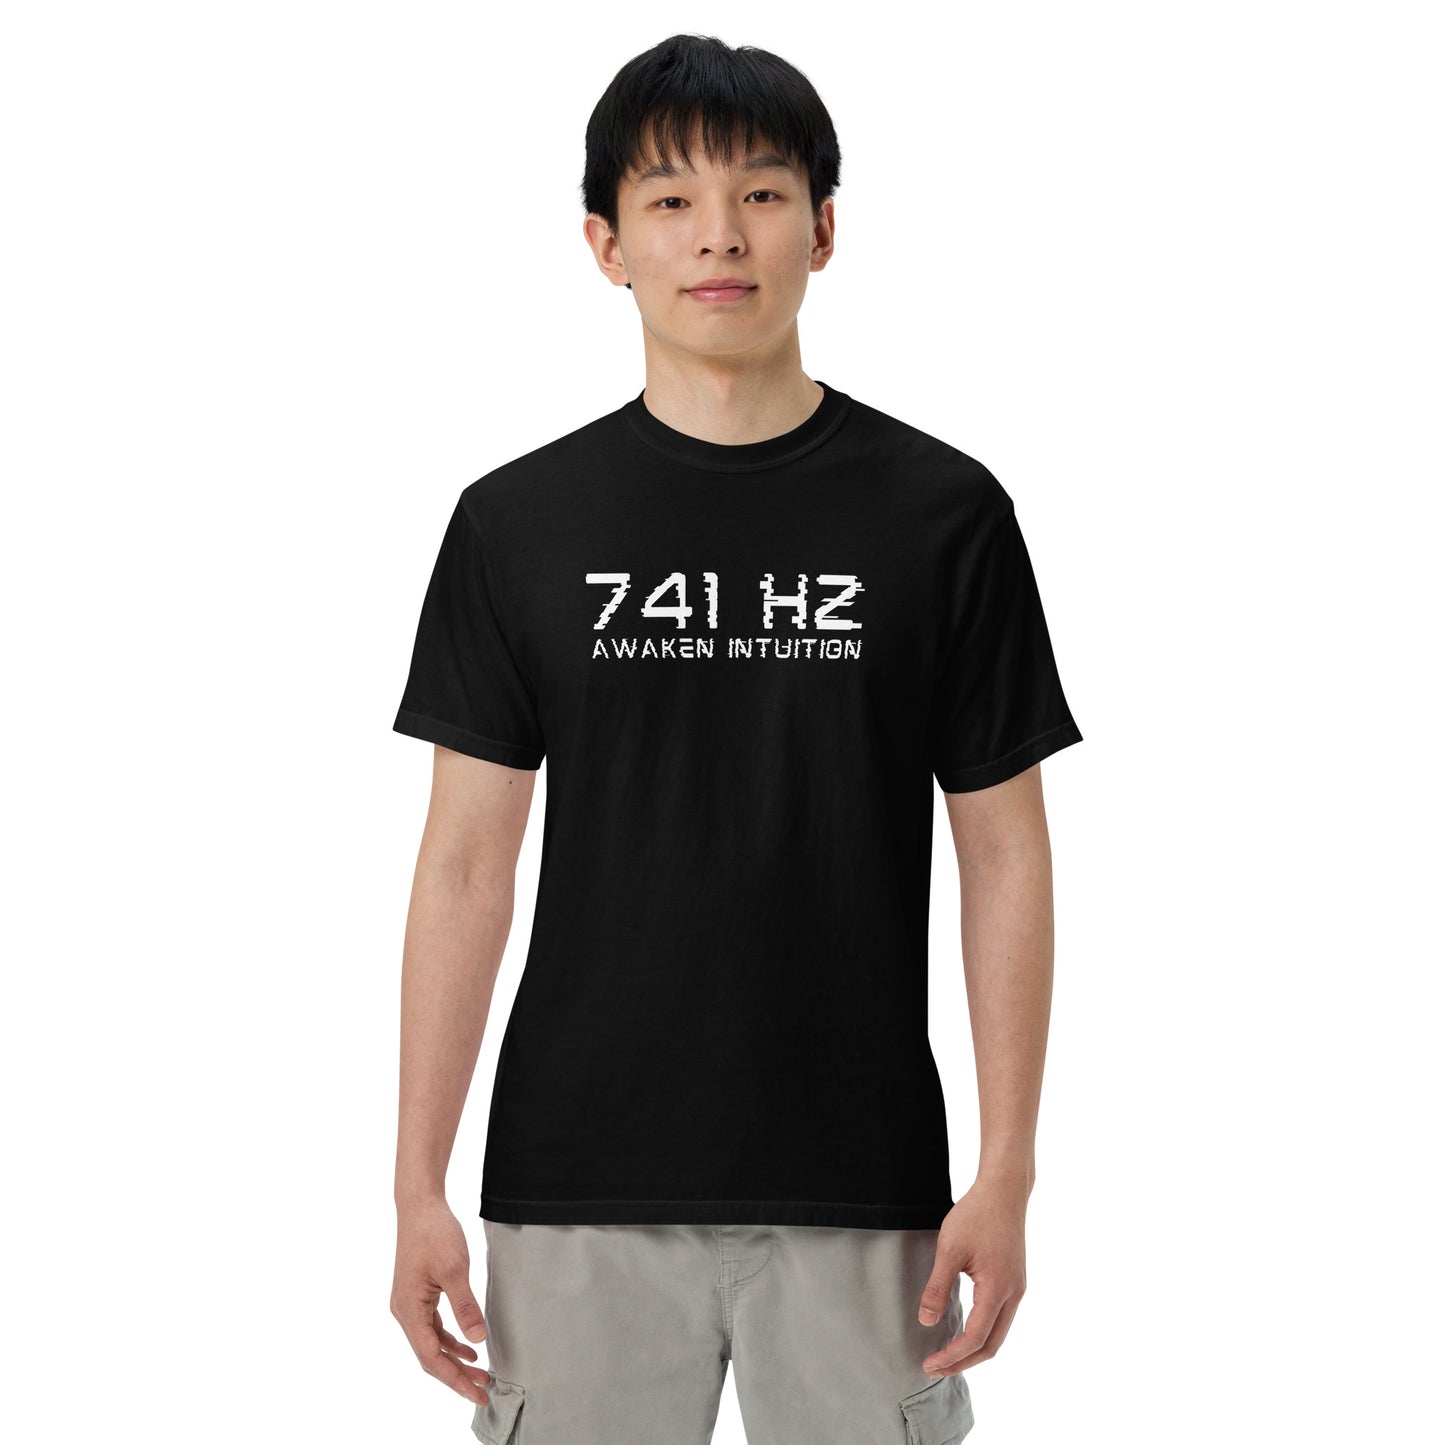 741 Hz Awaken Intuition Men’s garment-dyed heavyweight t-shirt